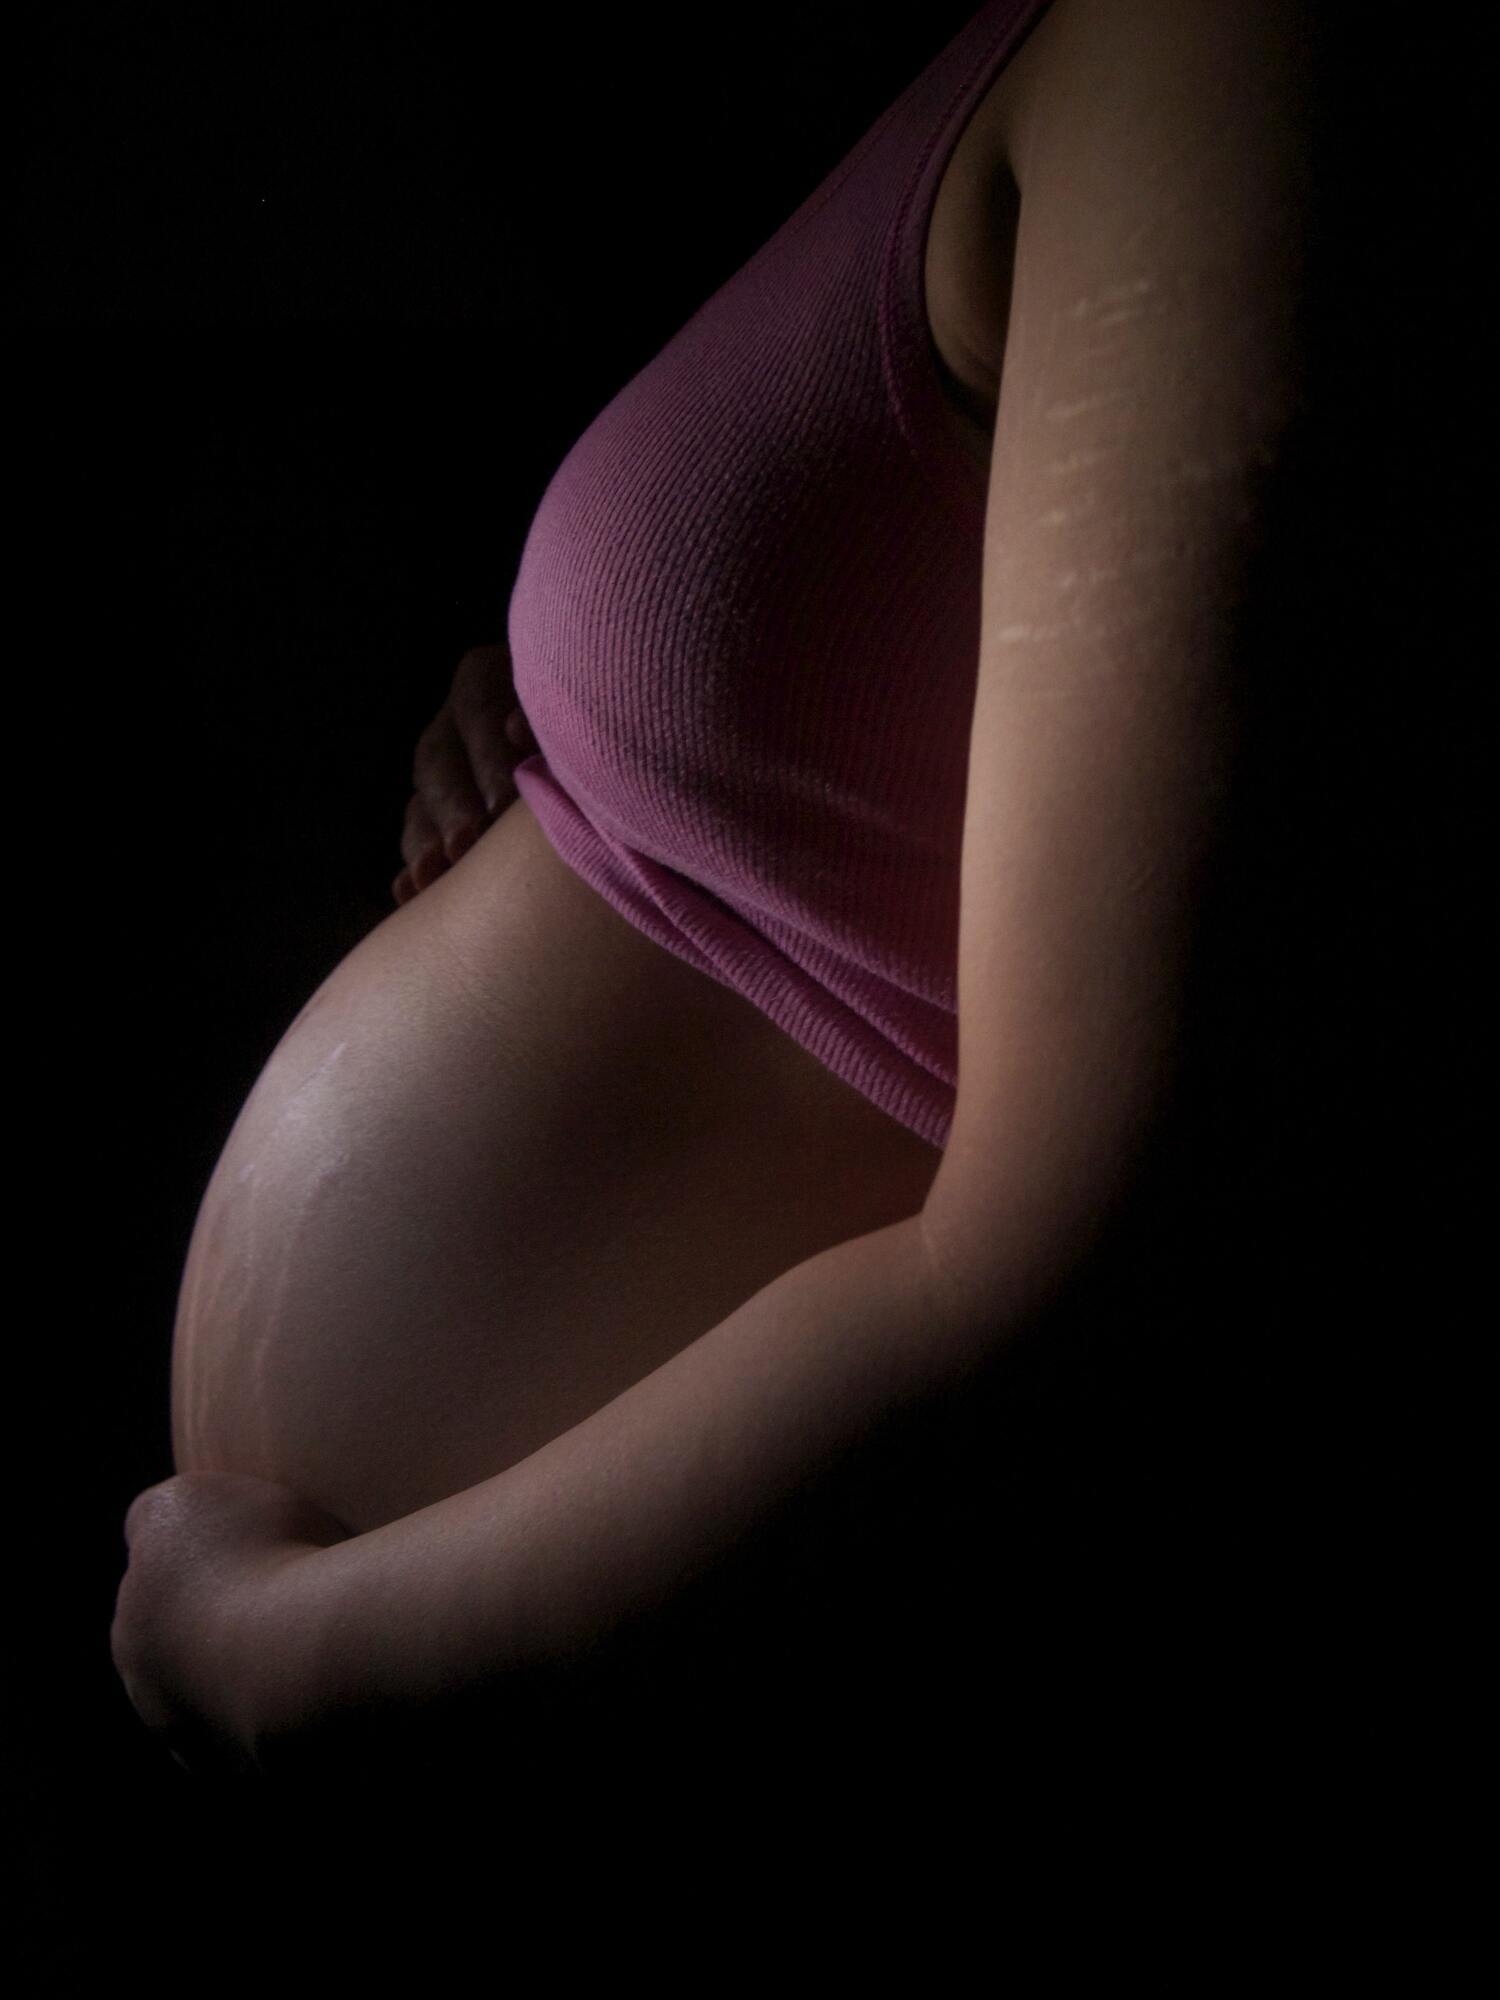 К 9 неделе развития эмбрион не имеет пола.